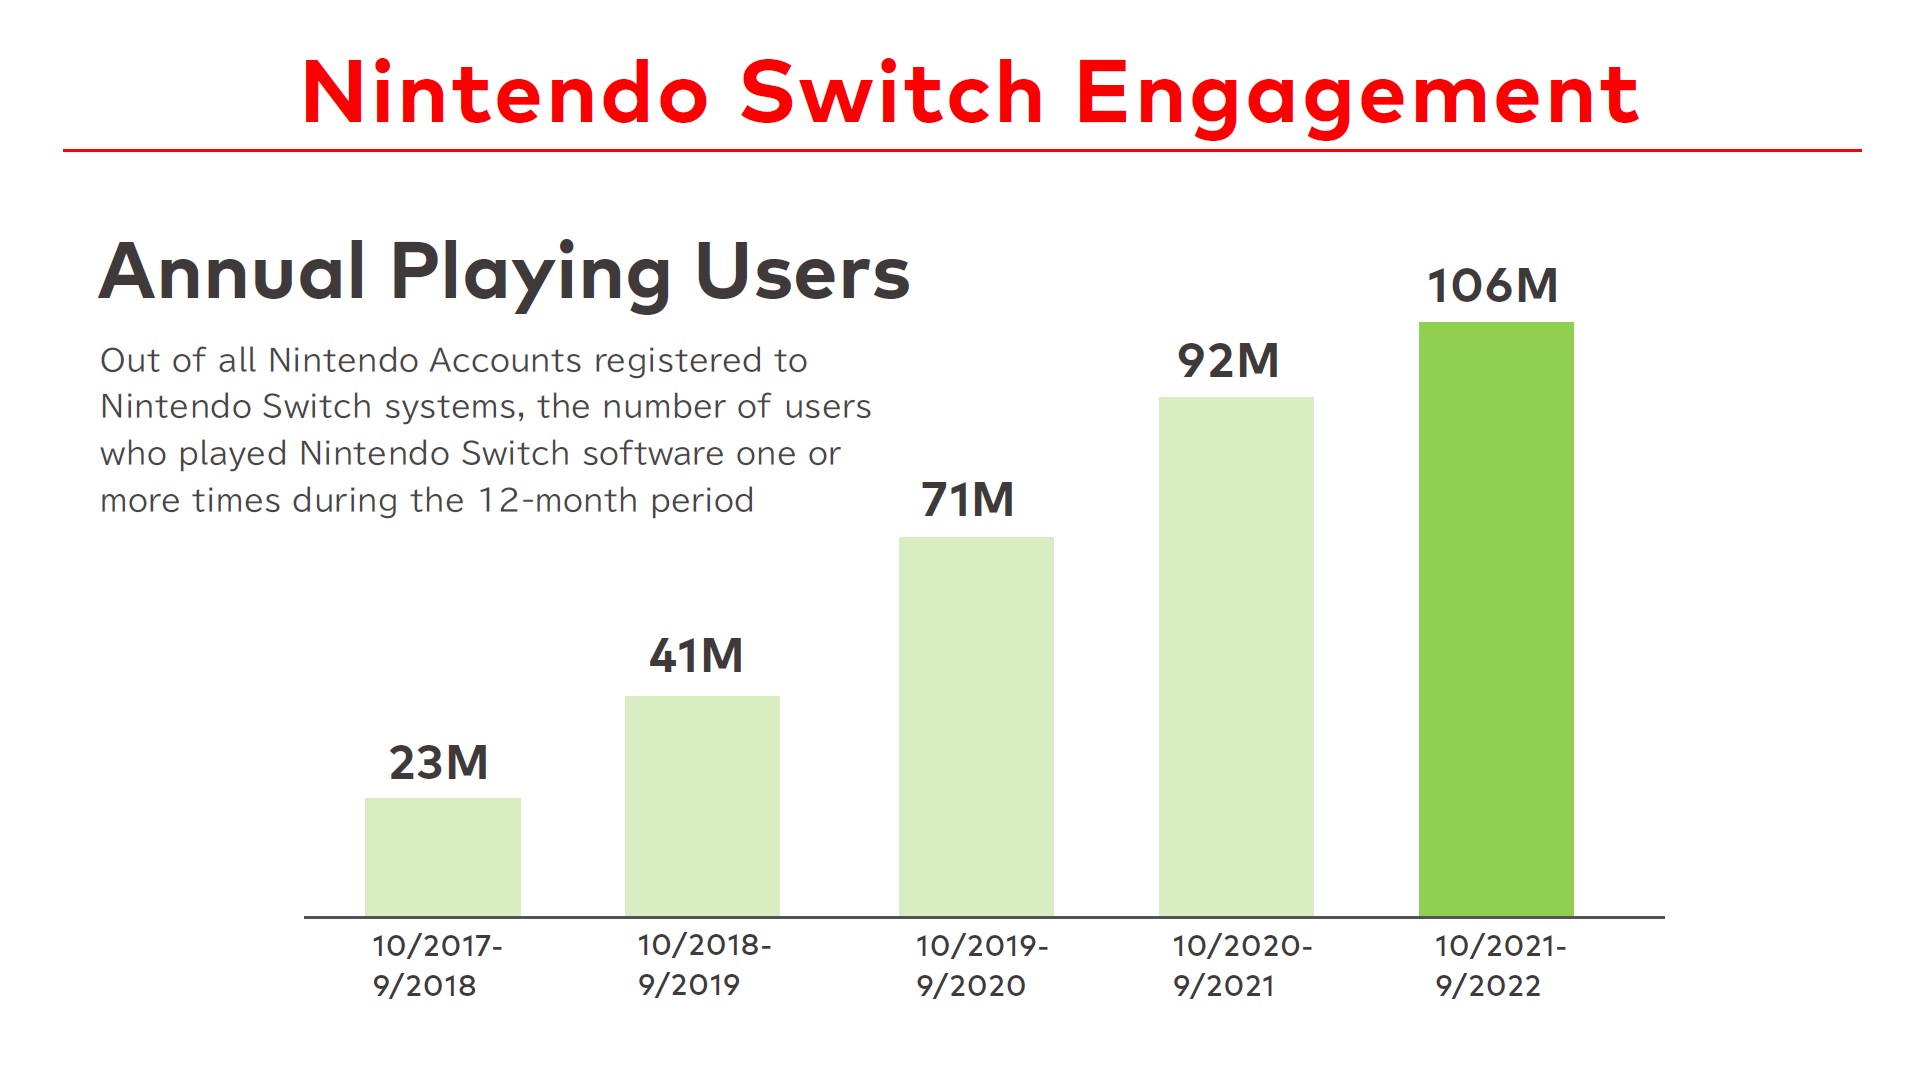 任天堂展示最新Switch用户数据 年用户总数超1亿 2%title%